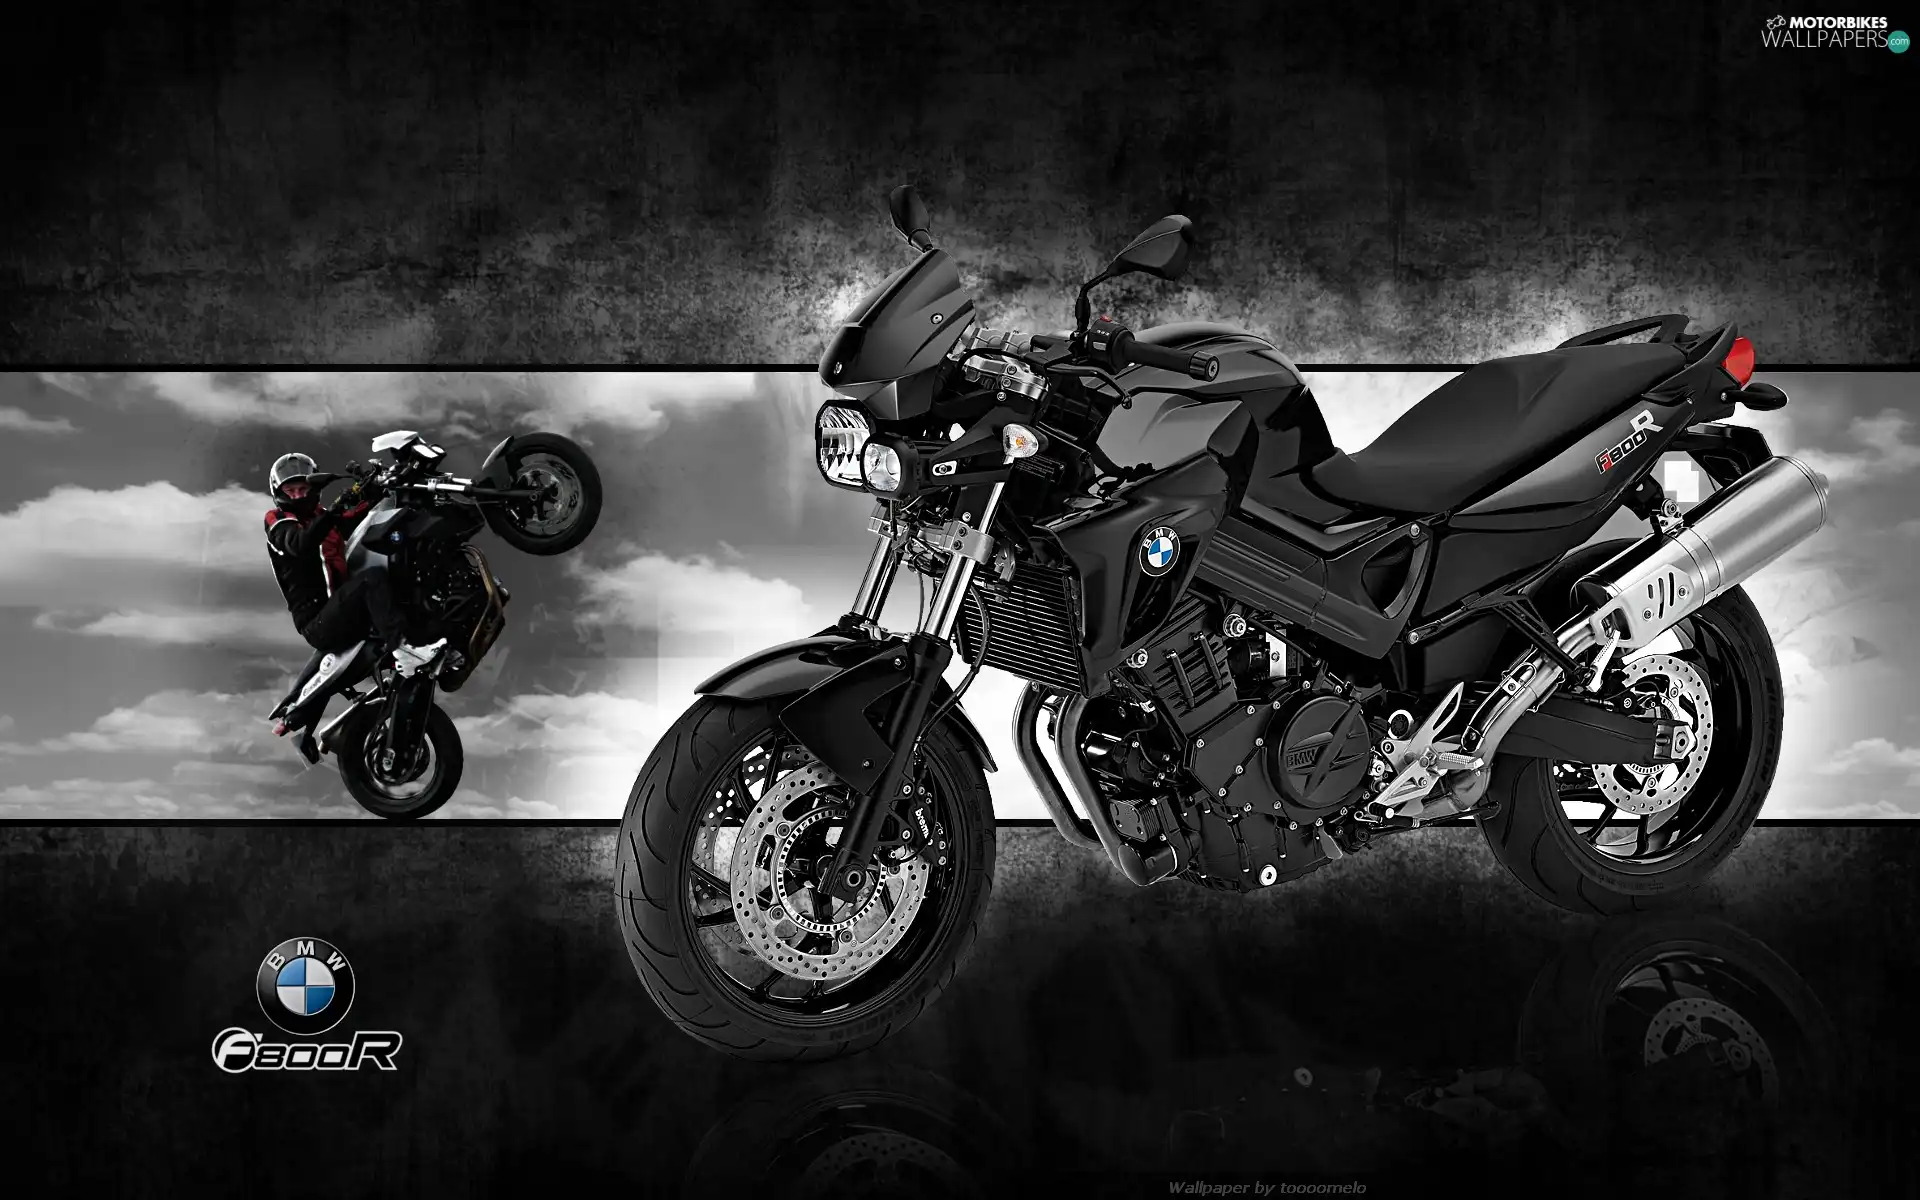 Motorcyclist, BMW F800R, motor-bike